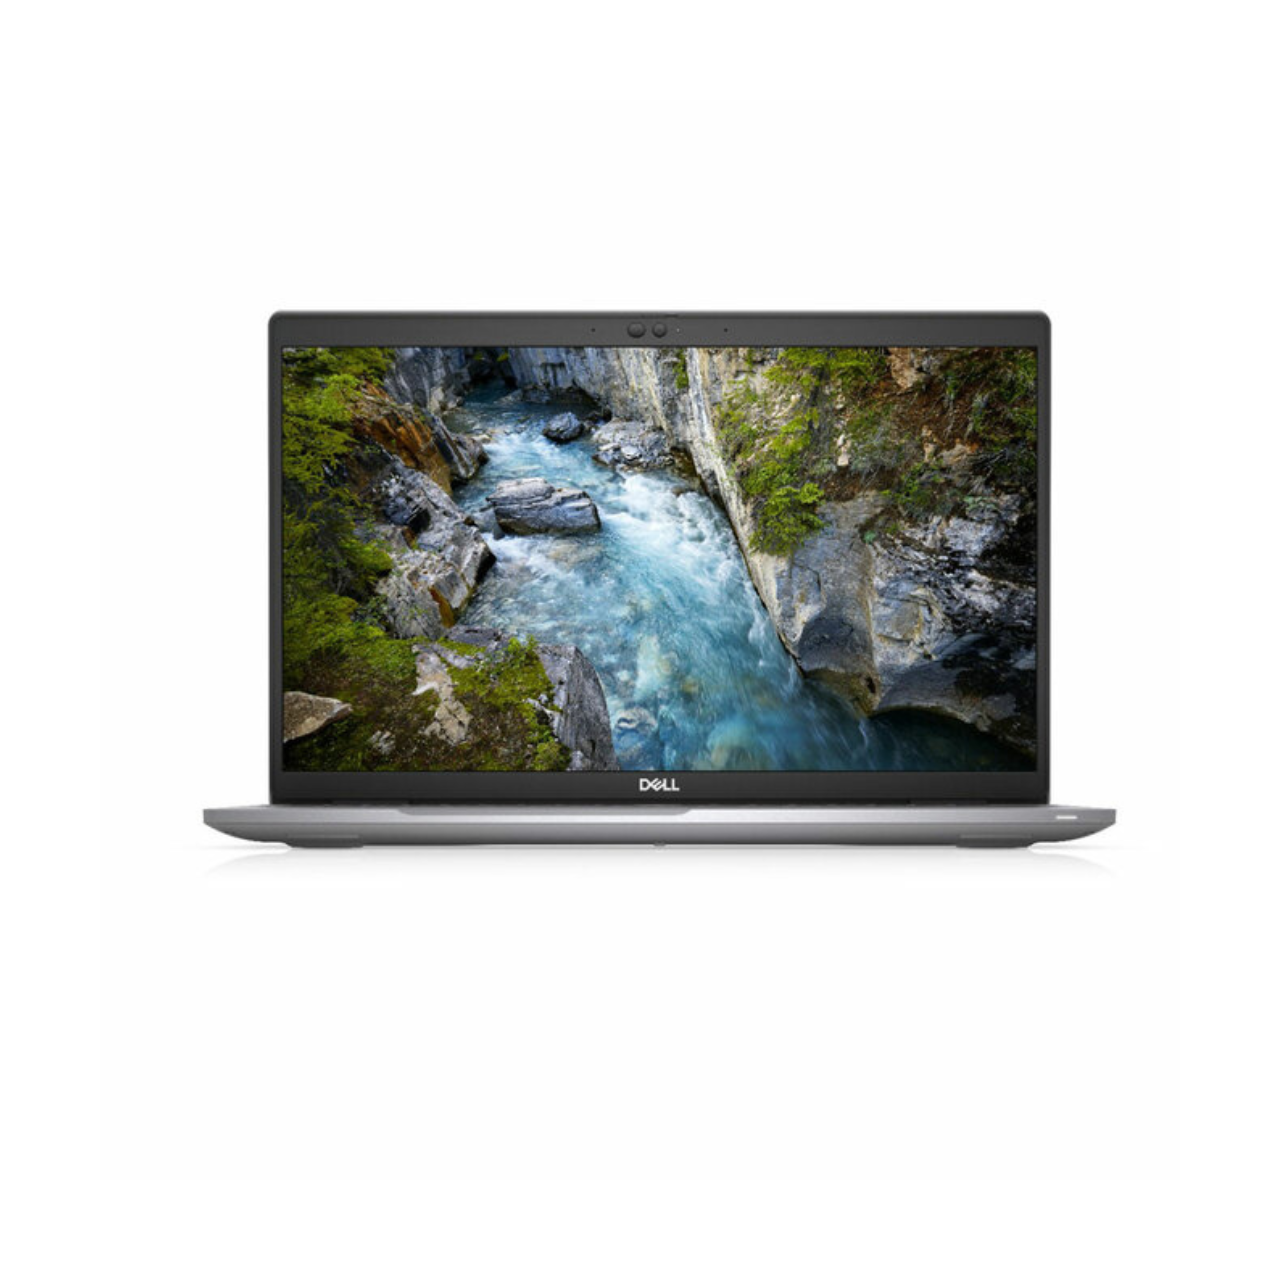 Dell Precision 3560 15.6" HD Laptop